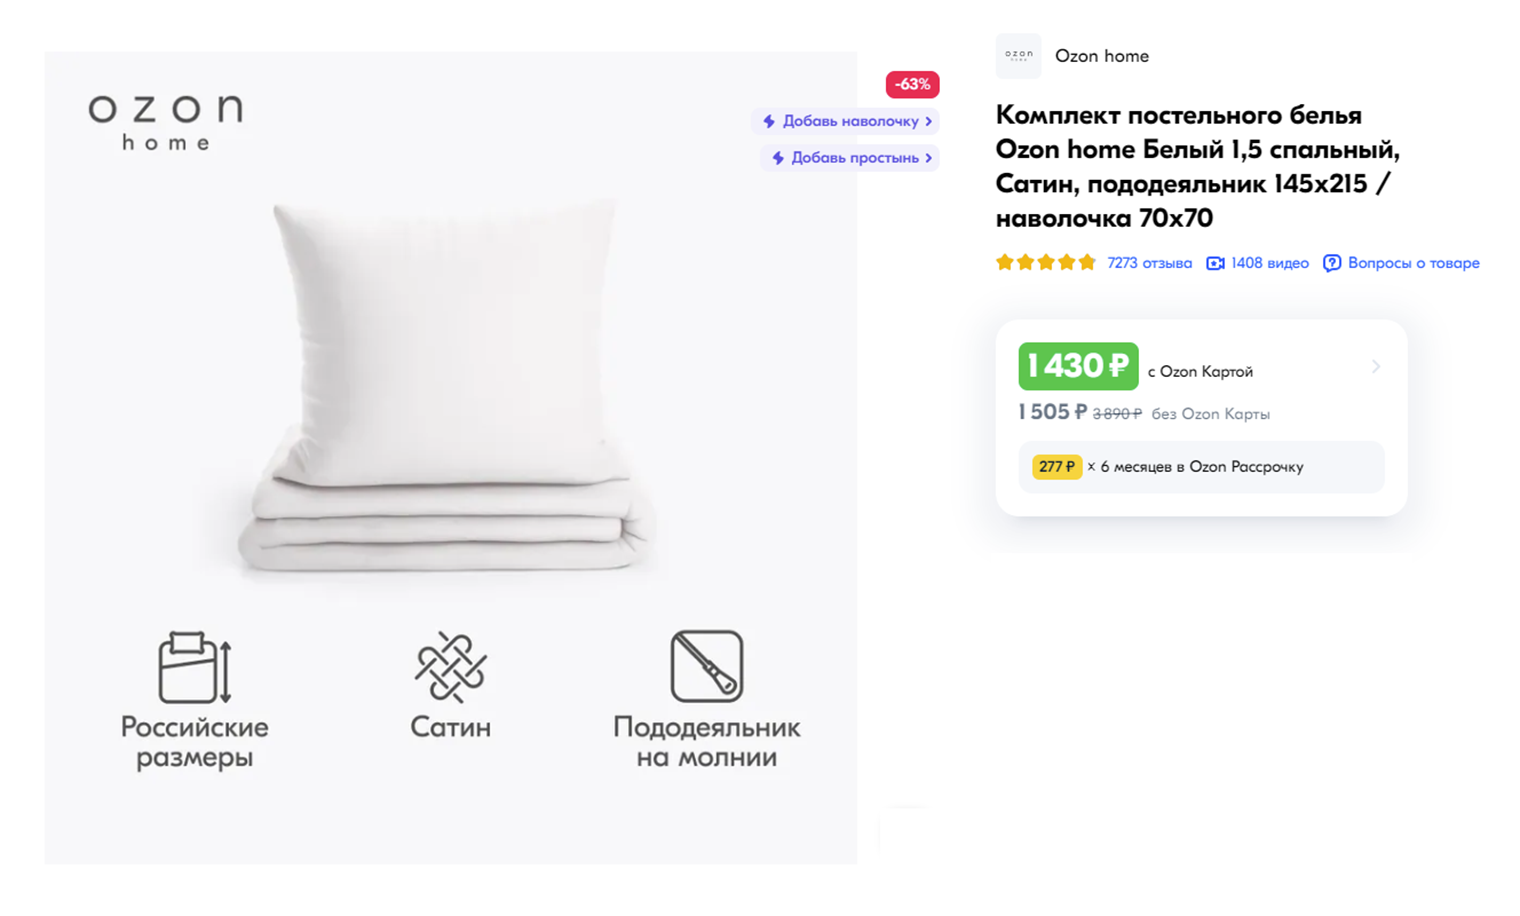 Можно купить стандартный белый комплект, а можно что⁠-⁠то более веселое. Источник: ozon.ru